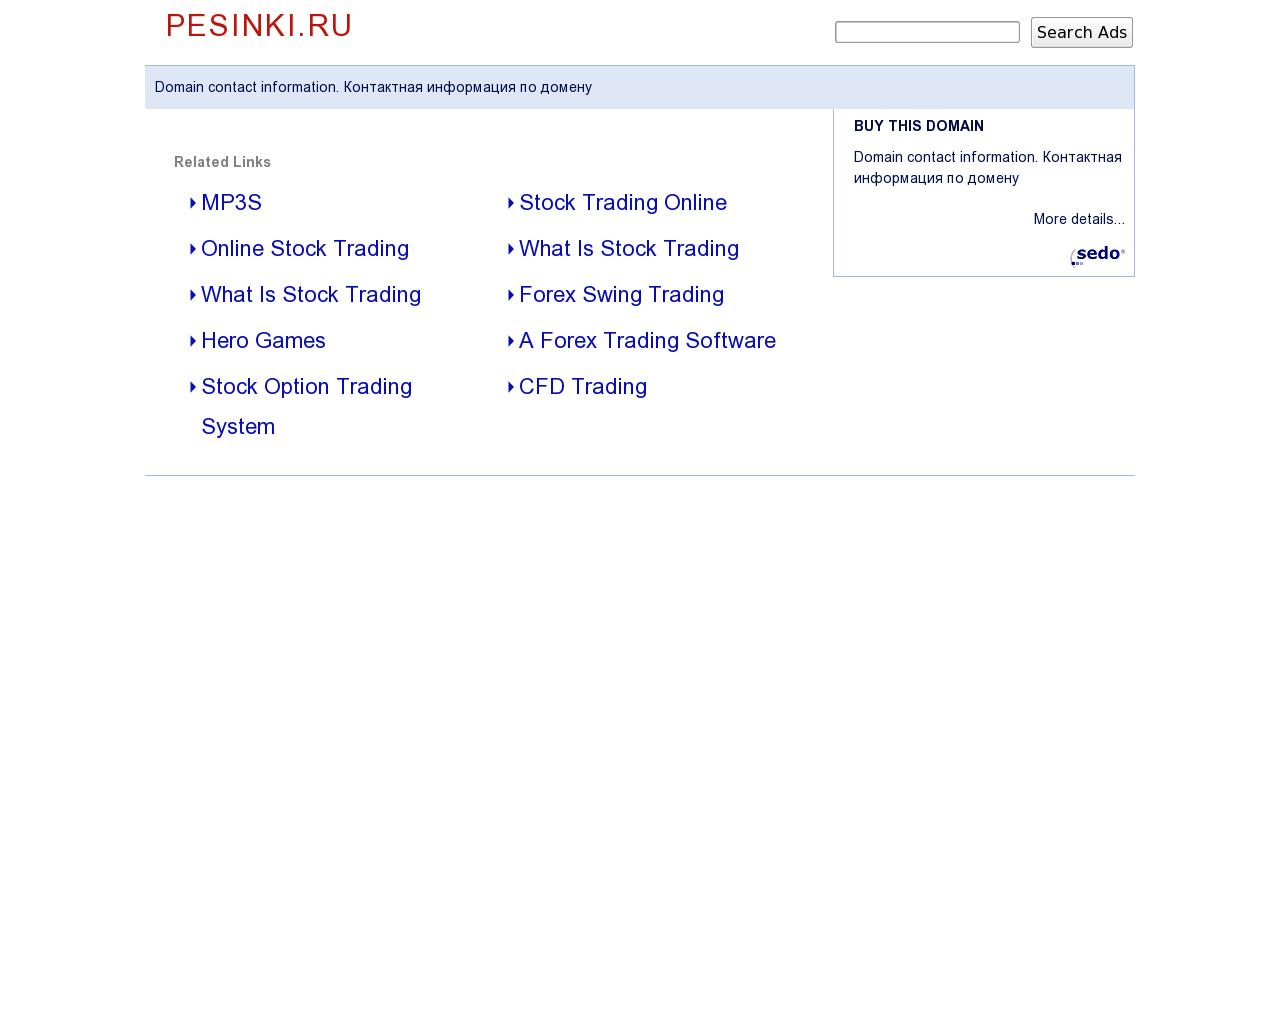 Изображение сайта pesinki.ru в разрешении 1280x1024